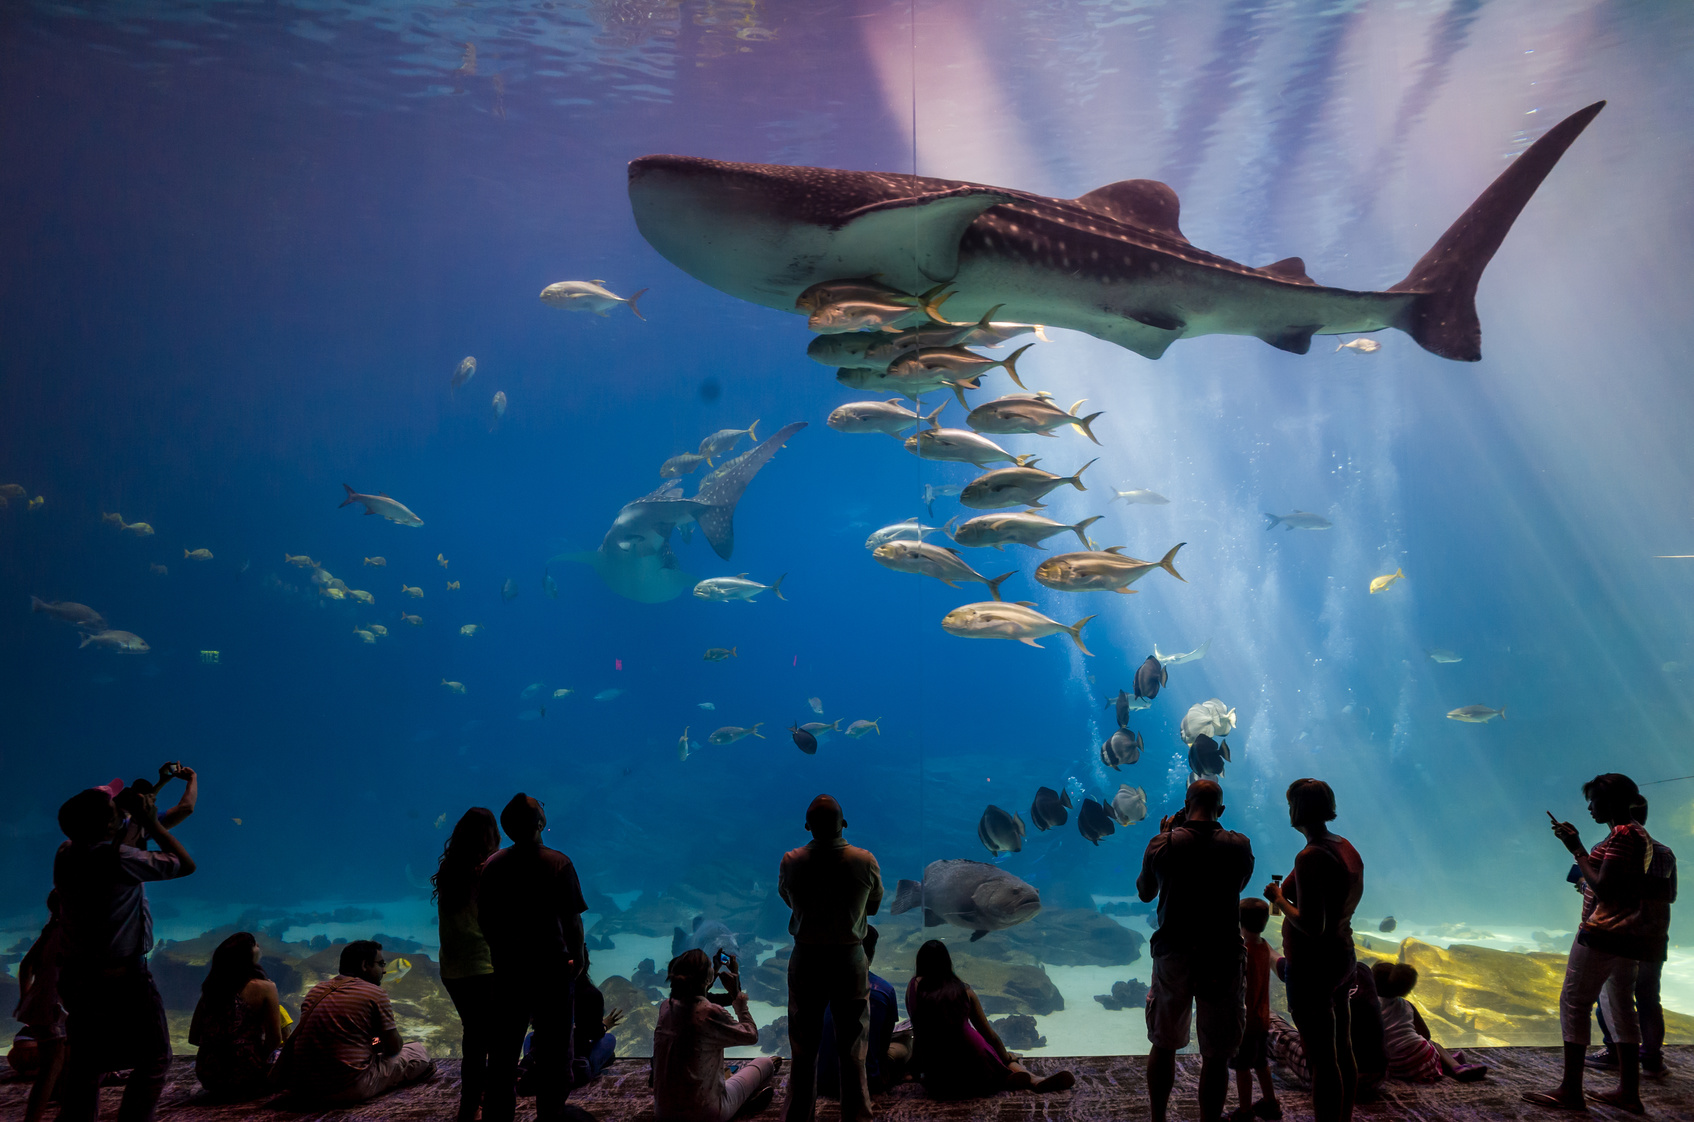 Les aquariums de France permettent de mieux appréhender la vie sous-marine et la faune aquatique. © F11, Fotolia